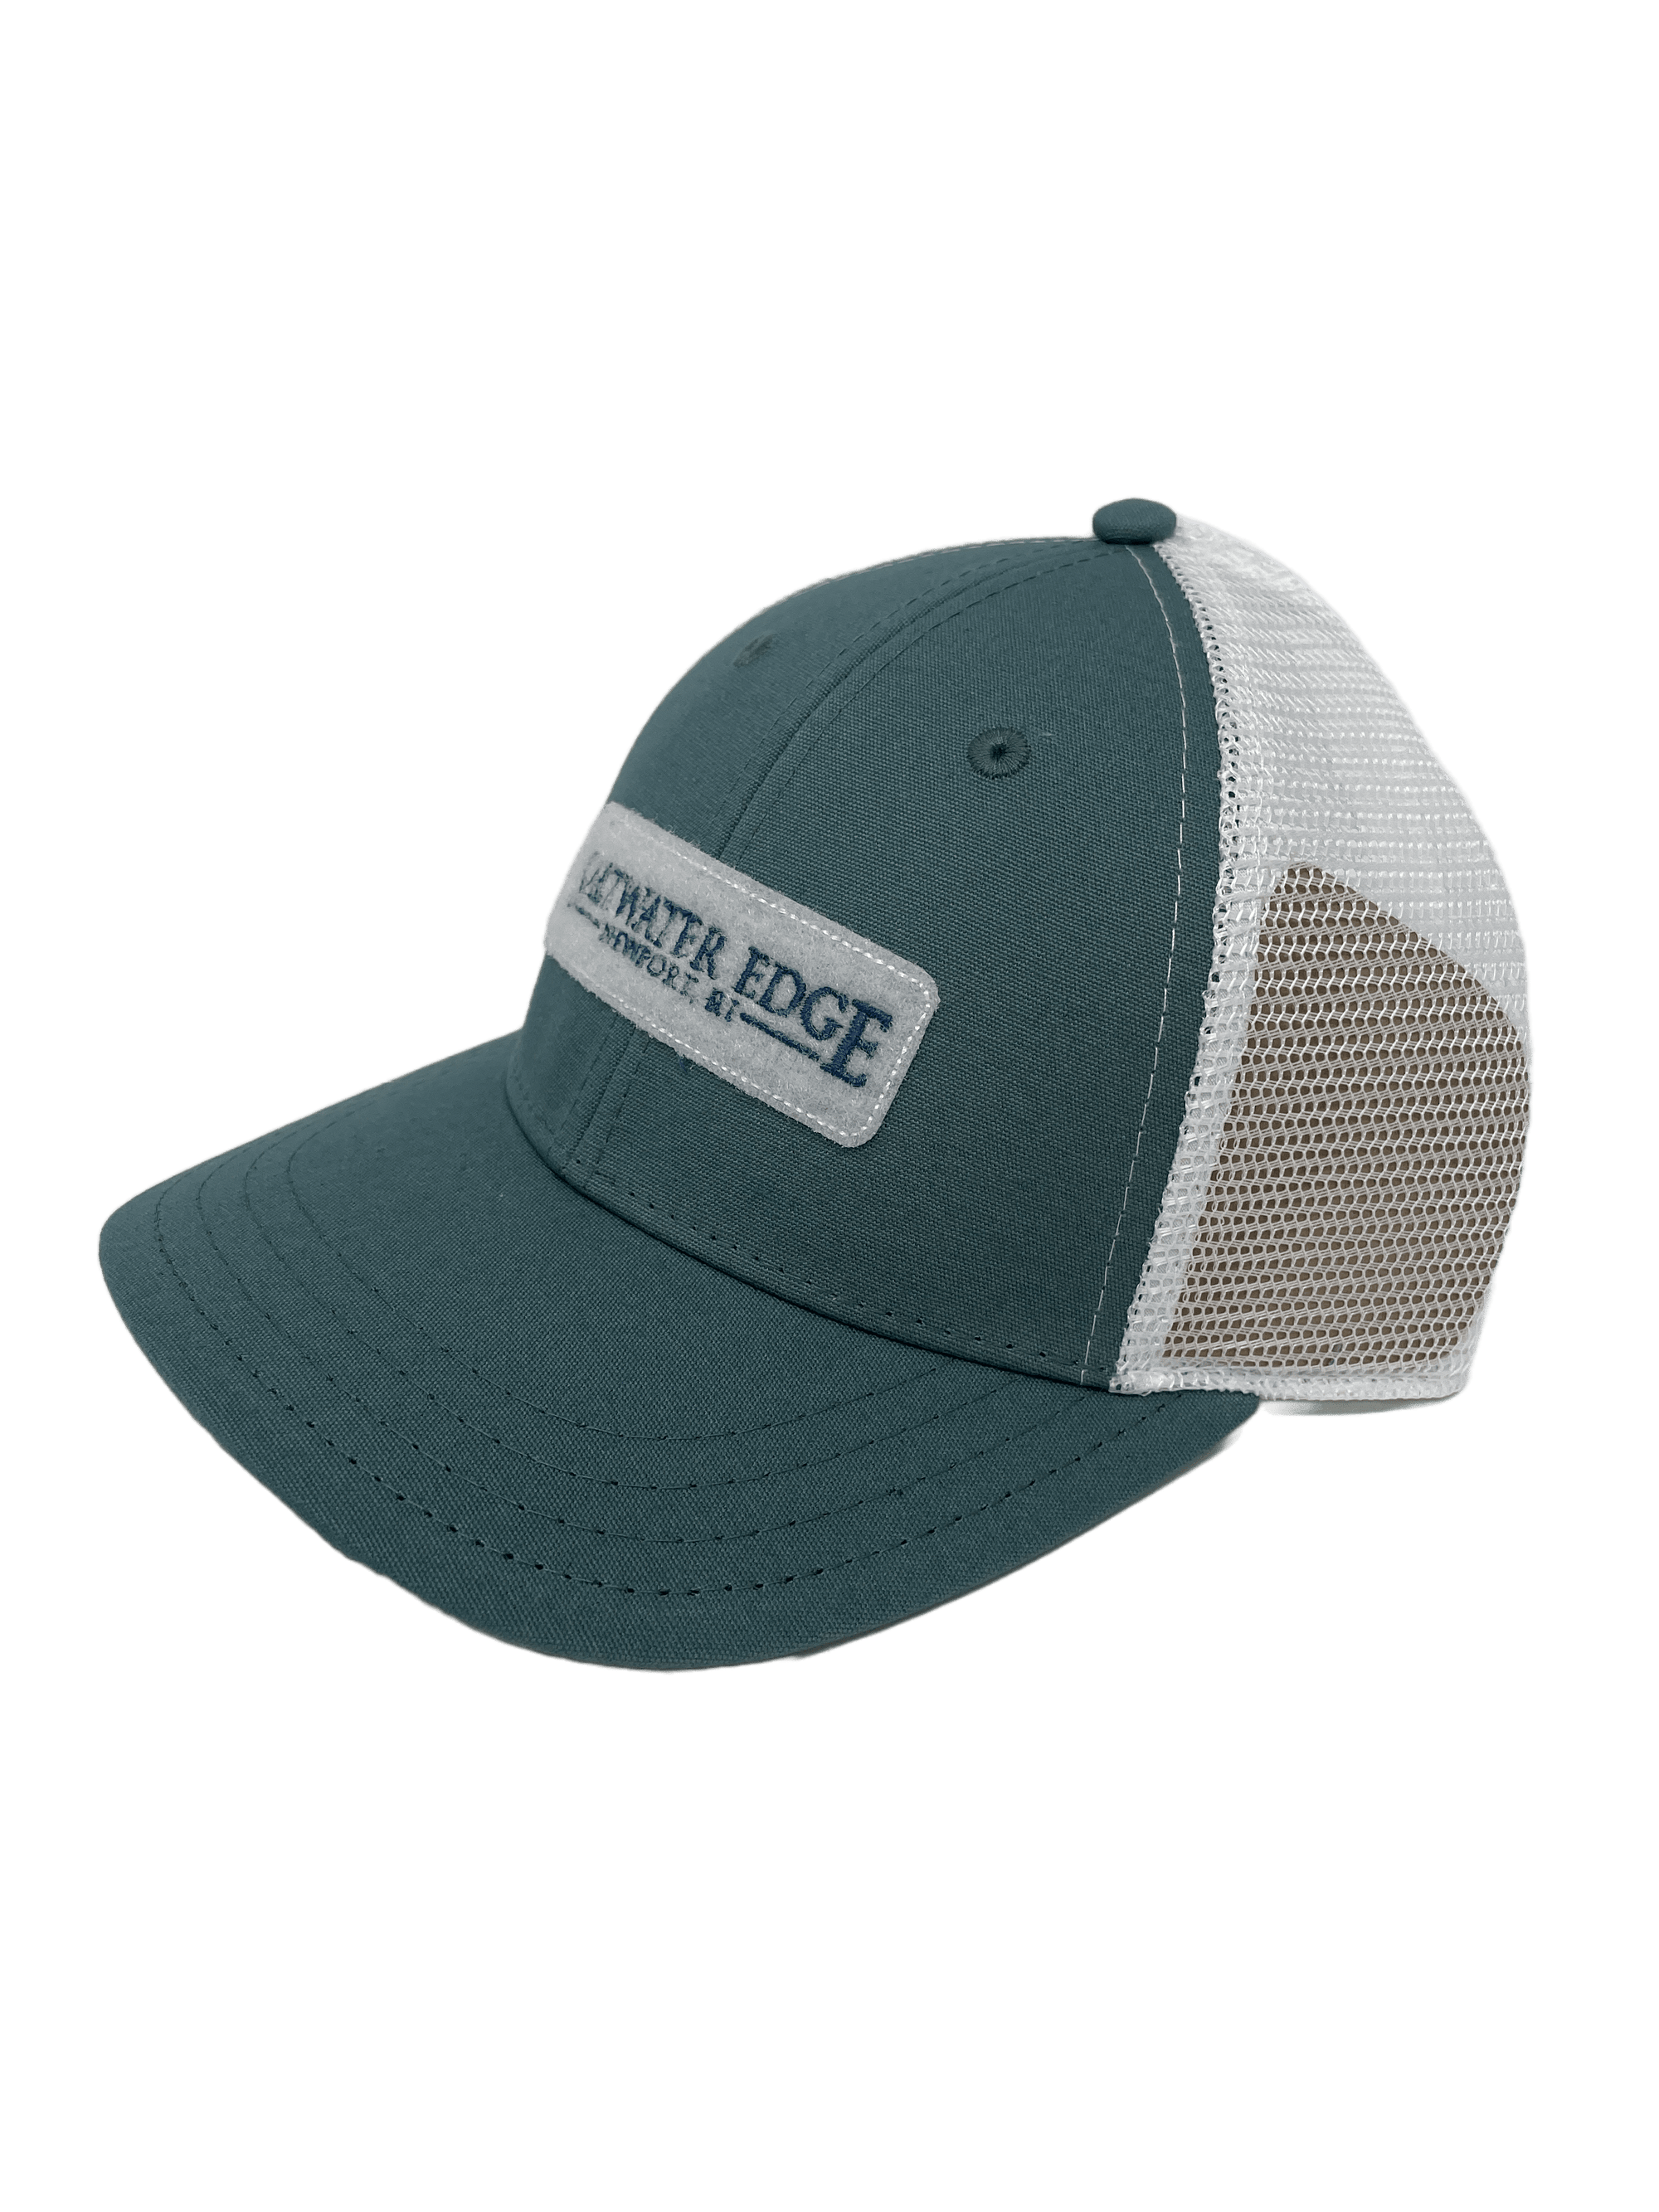 Saltwater Edge Logo Sideline Trucker Hat - The Saltwater Edge